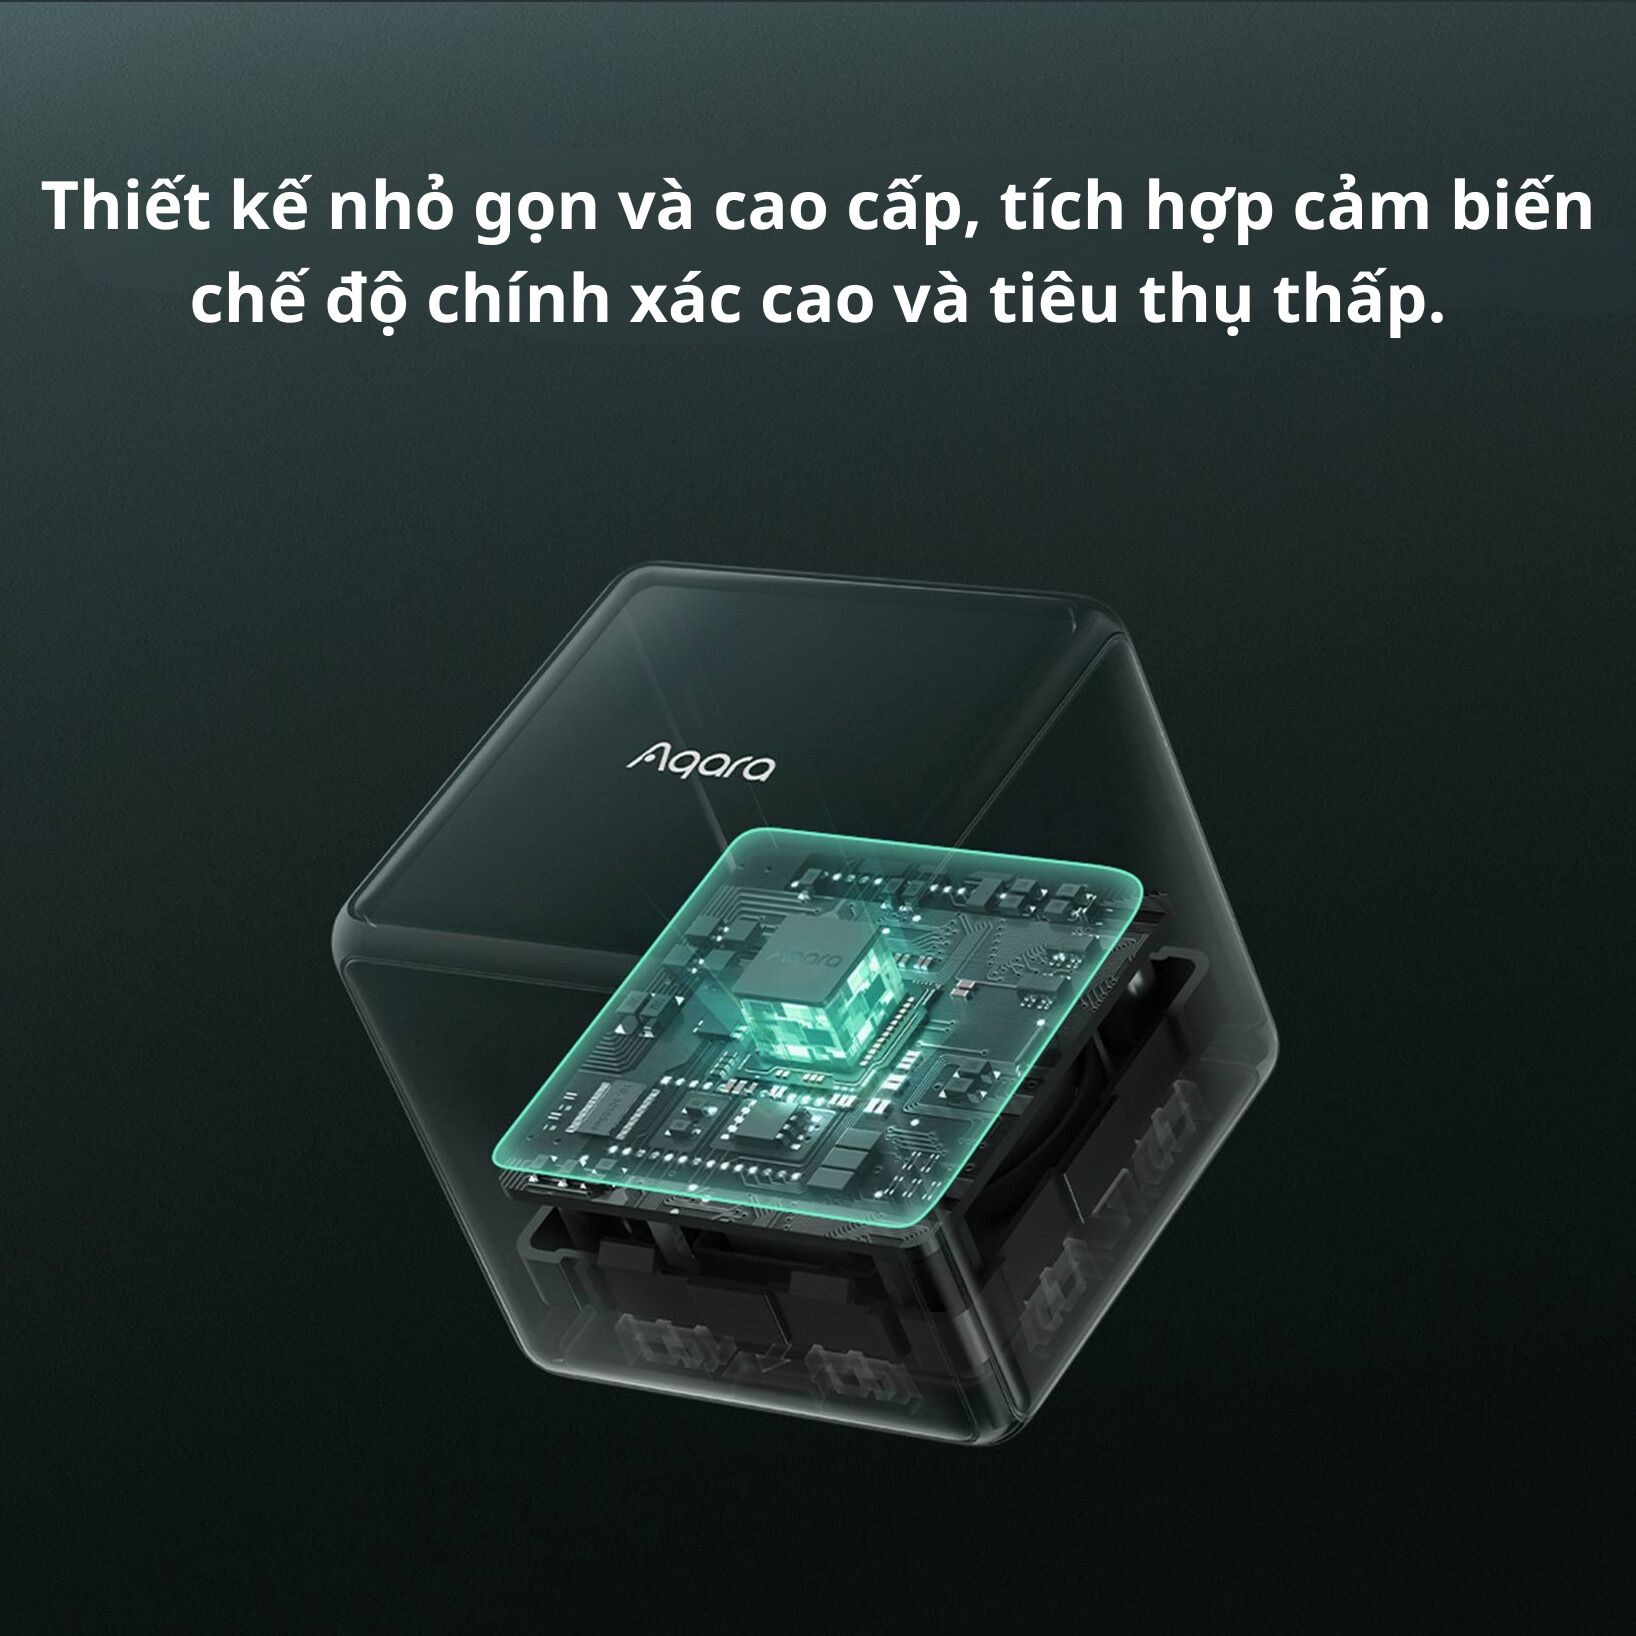 Thiết Bị Điều Khiển Thông Minh Hình Khối Aqara Cube T1 Pro/Cube MFKZQ01LM Cần Hub Homekit Nhỏ Gọn BH 12 Tháng Hàng Chính Hãng